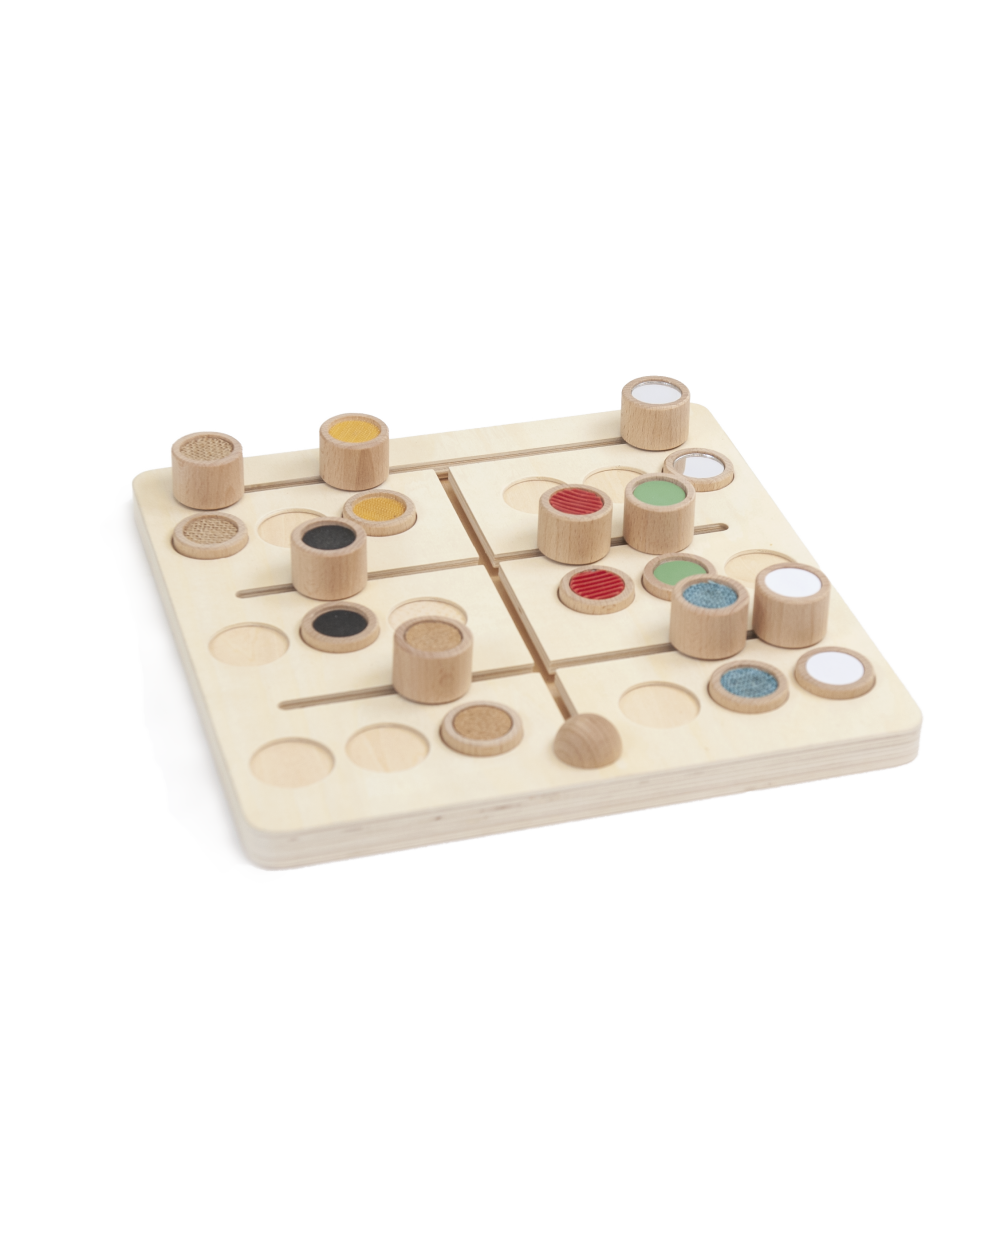 texturen-motoriekbord hout - textures matching sliding game - planche de motricité textures en bois